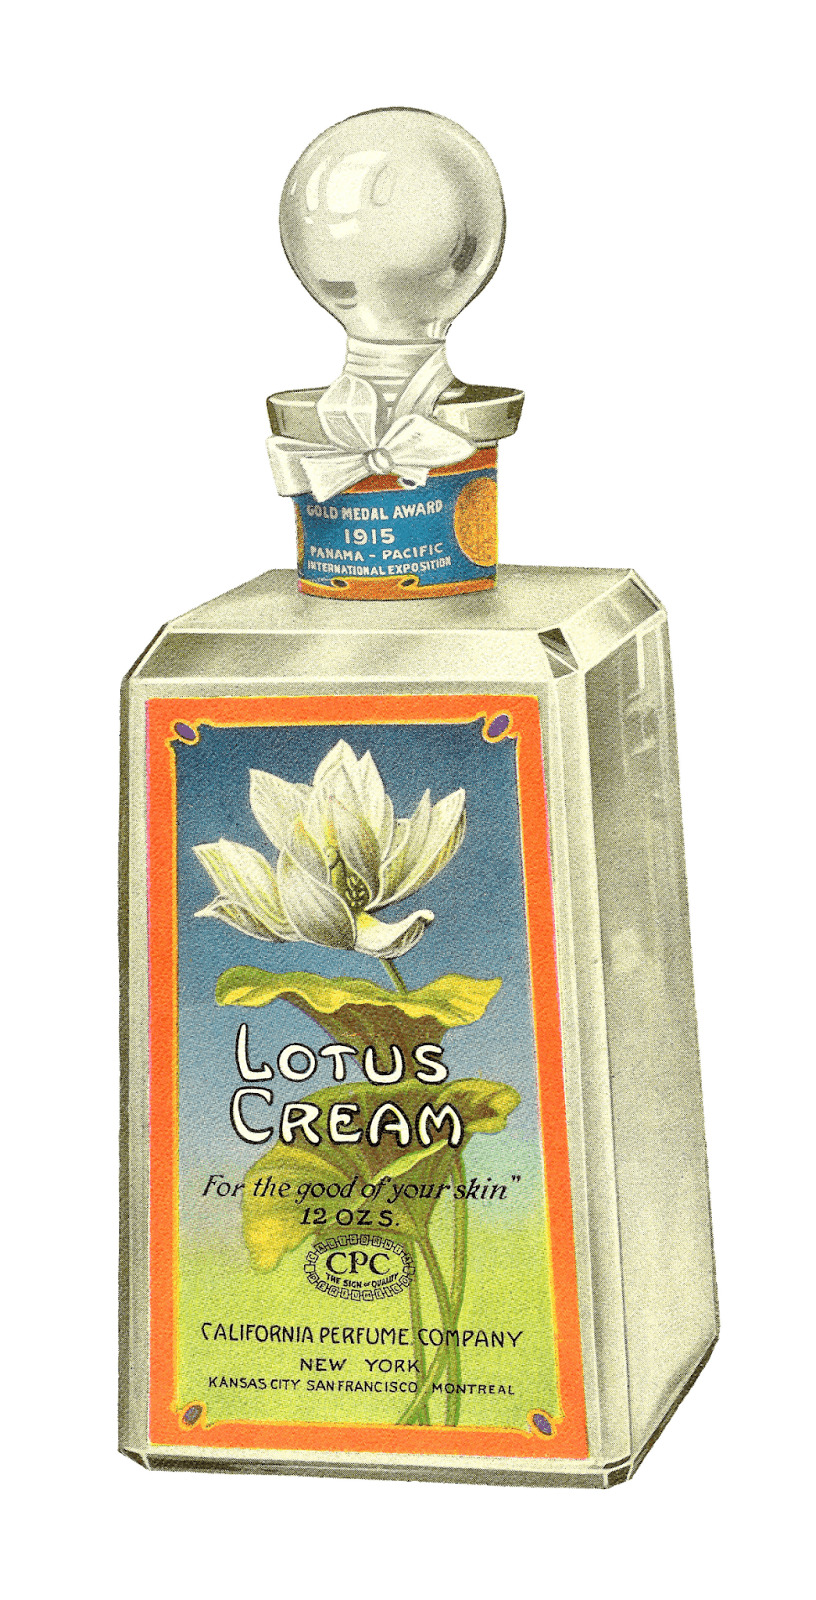 Lotus Cream Skin Lotion png icons